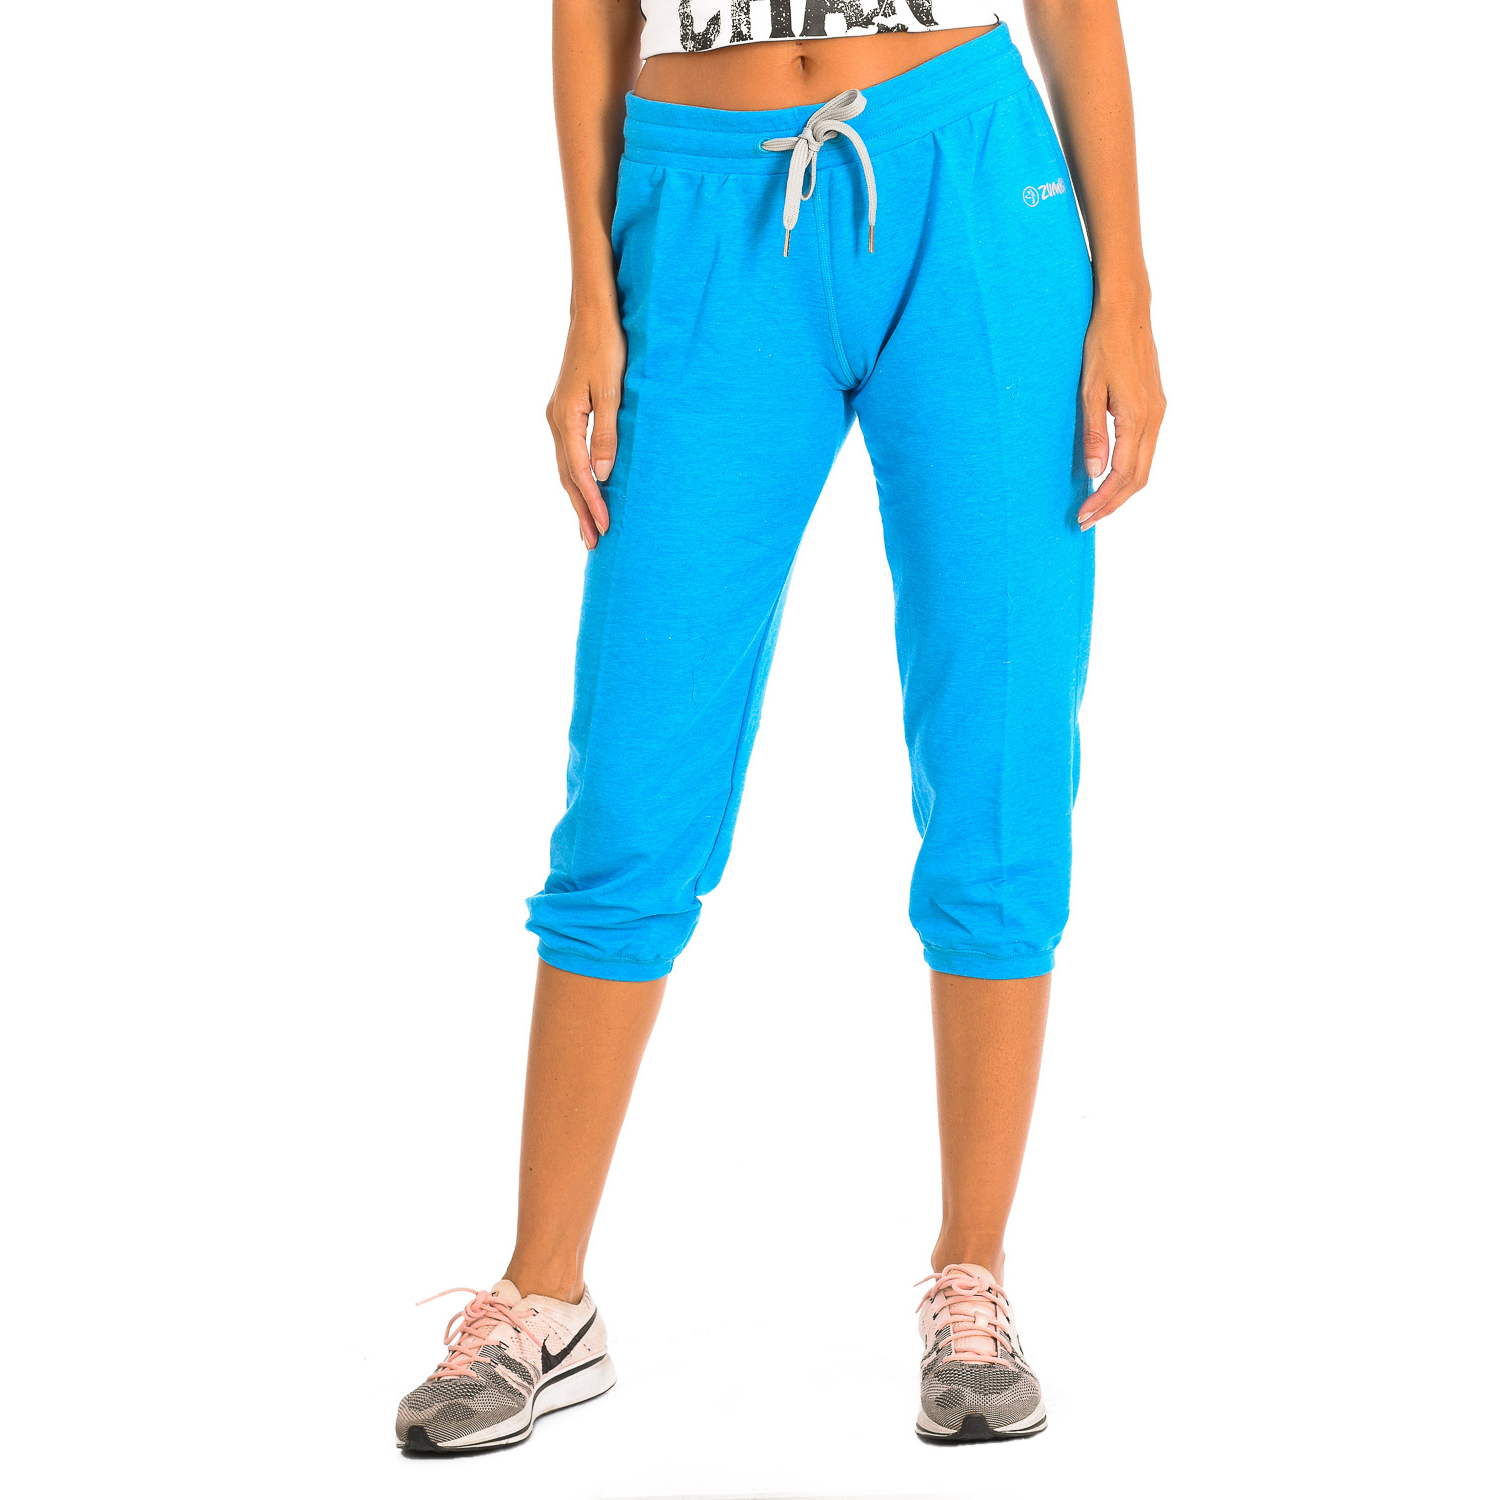 Shorts Desportivass Femininos Ajustáveis Com Cordão Z1b00198 - azul - 